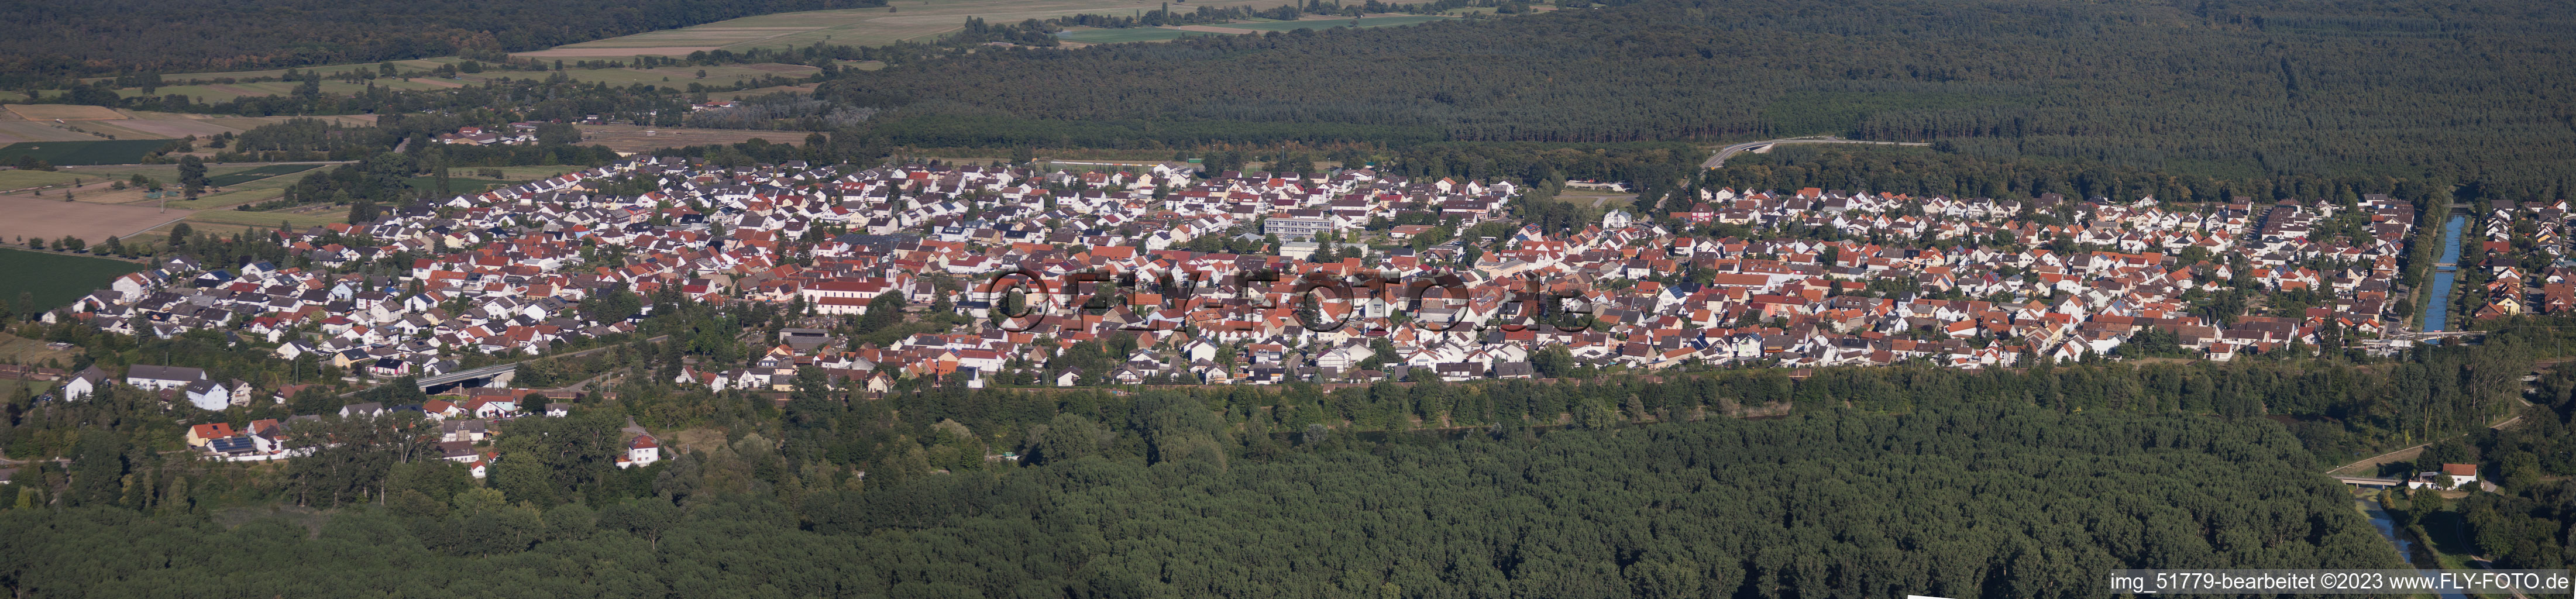 Vue aérienne de Panorama à le quartier Neudorf in Graben-Neudorf dans le département Bade-Wurtemberg, Allemagne